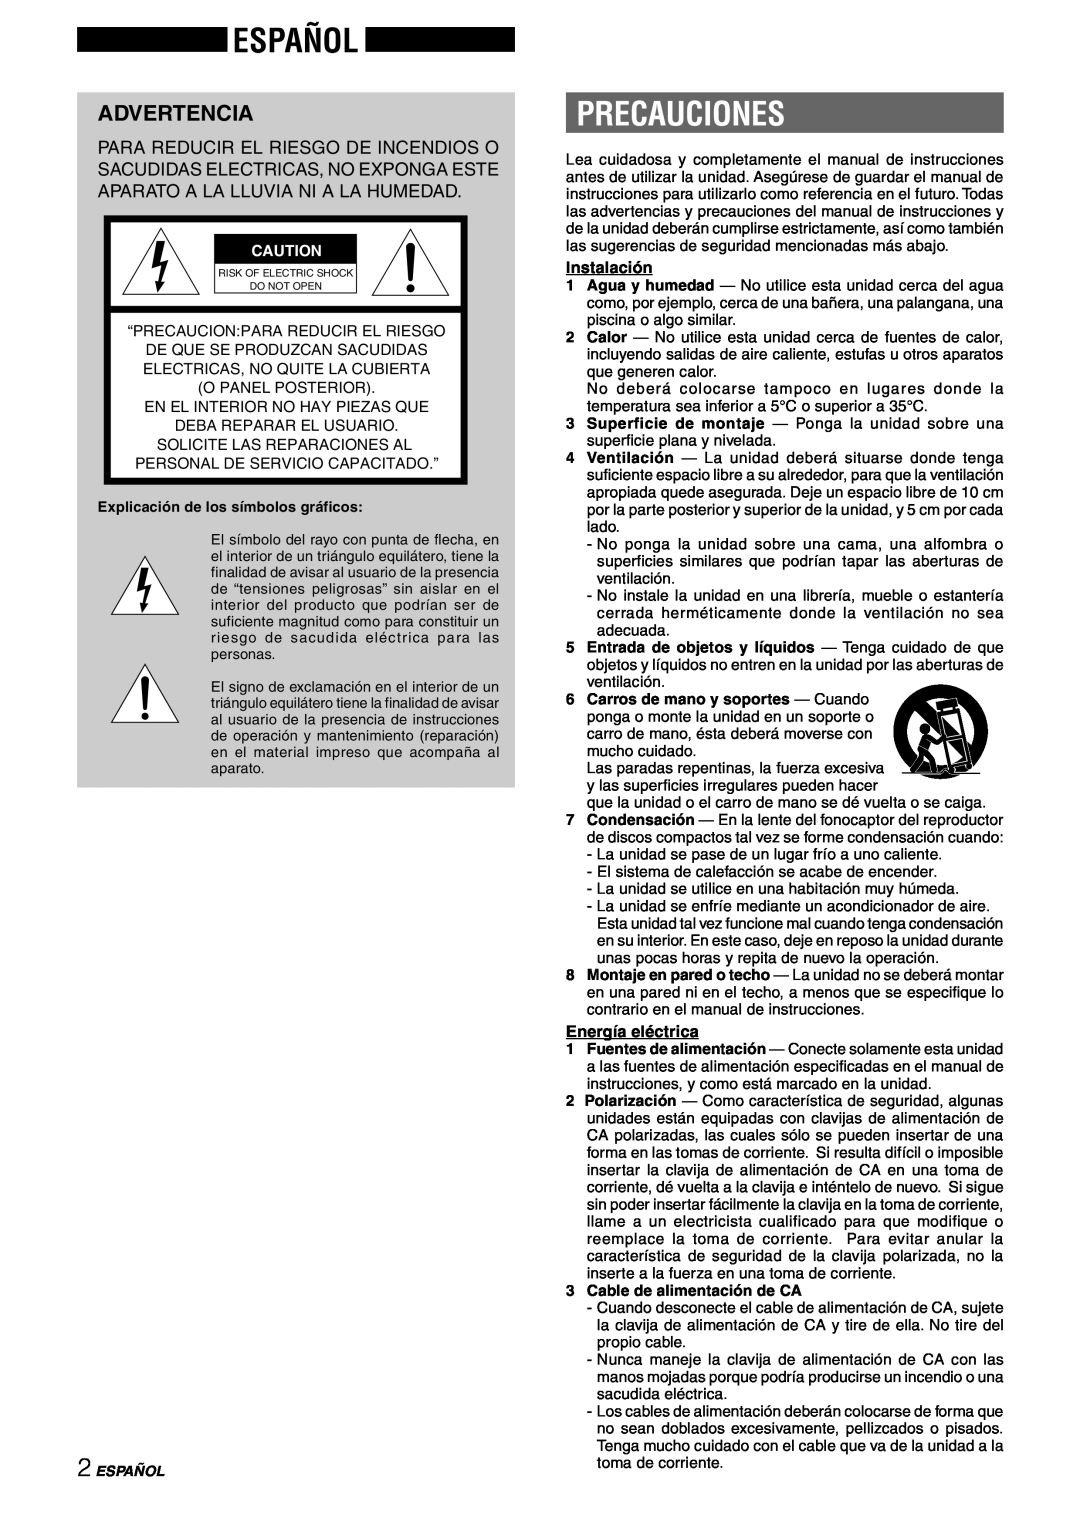 Sony NSX-AJ80 manual Español, Precauciones, Advertencia, Instalación, Energía eléctrica 